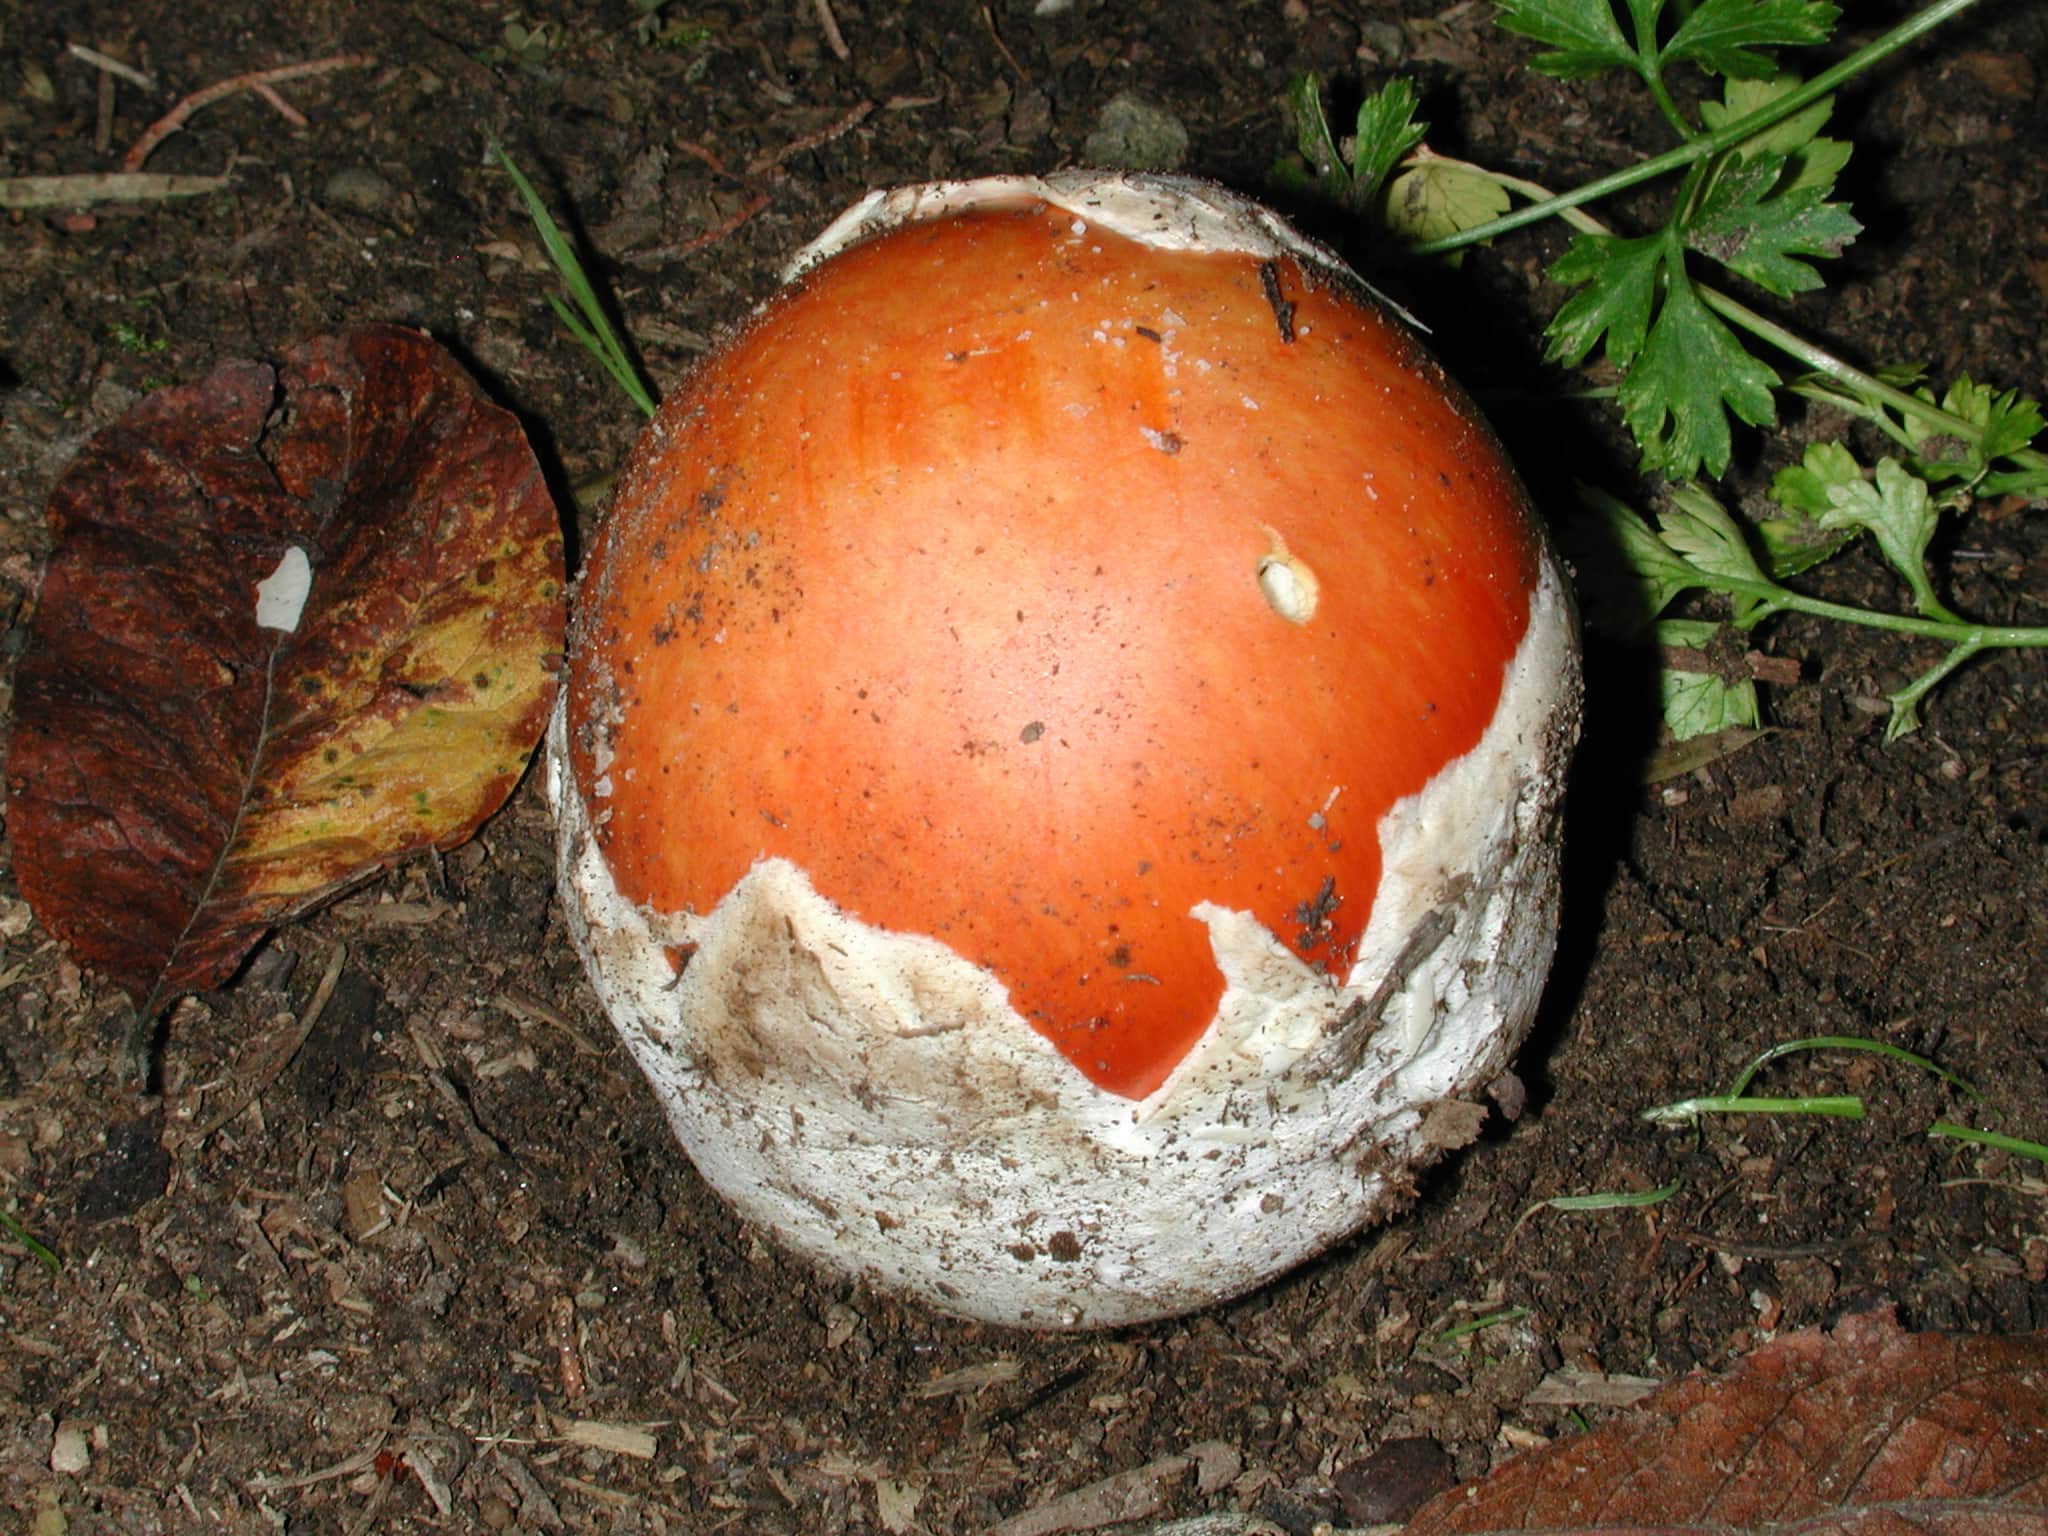 野生红蘑菇有毒吗图片